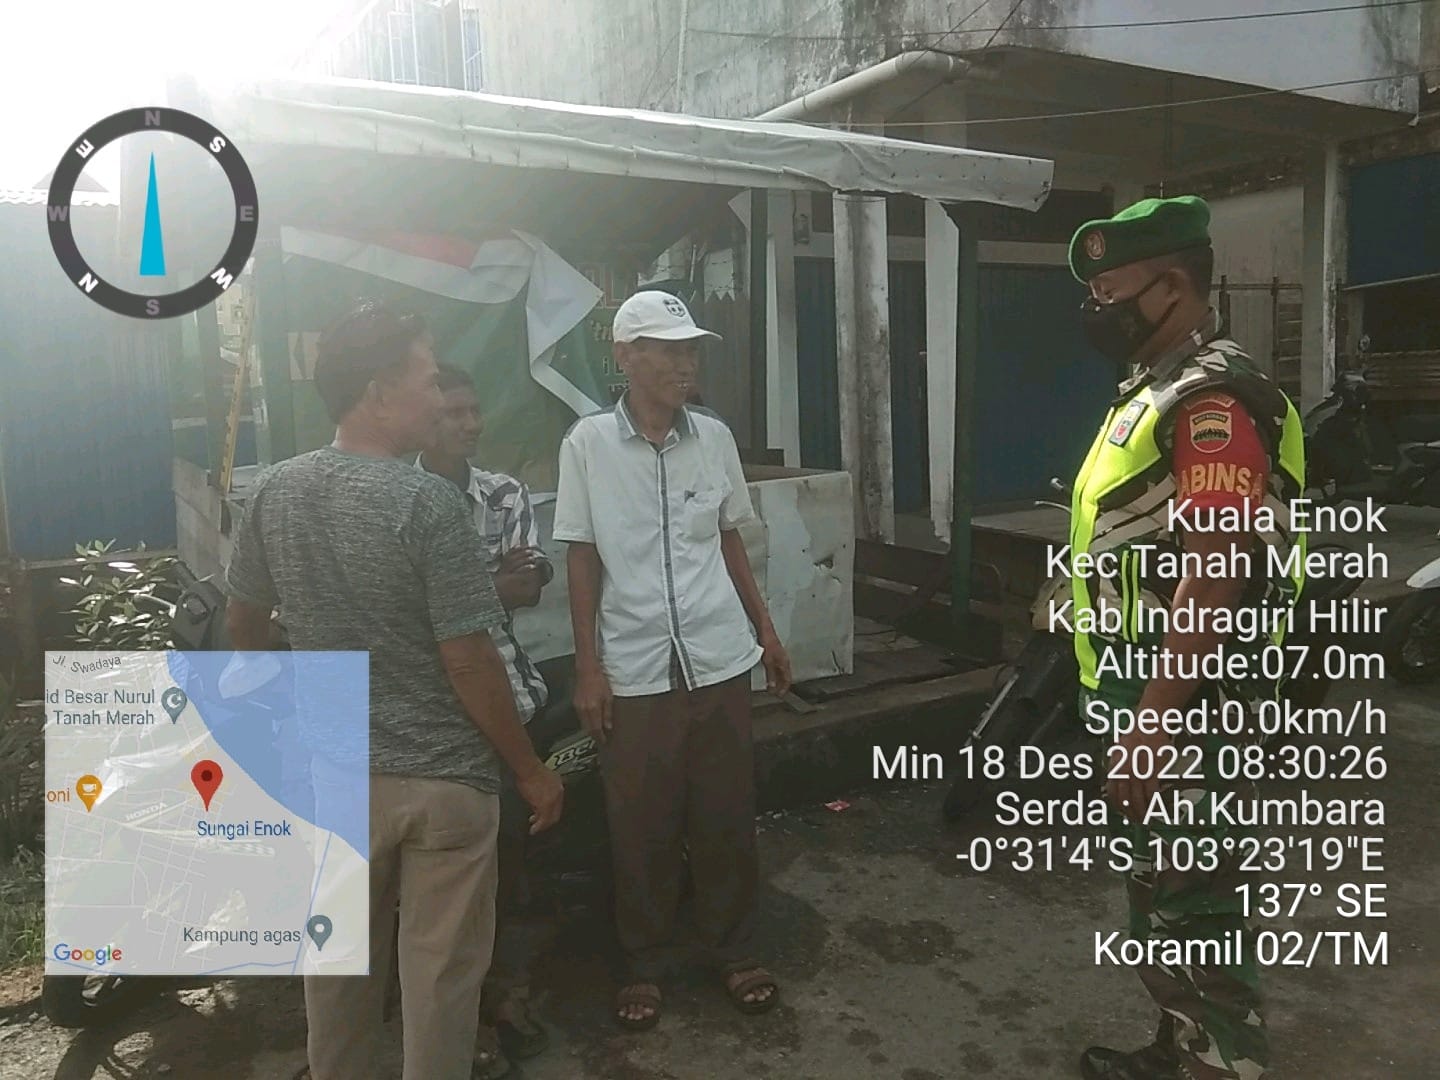 Serda Ah Kumbara Anggota Koramil 02/TM Beri Himbauan Protkes Kepada Warga di Kelurahan Kuala Enok